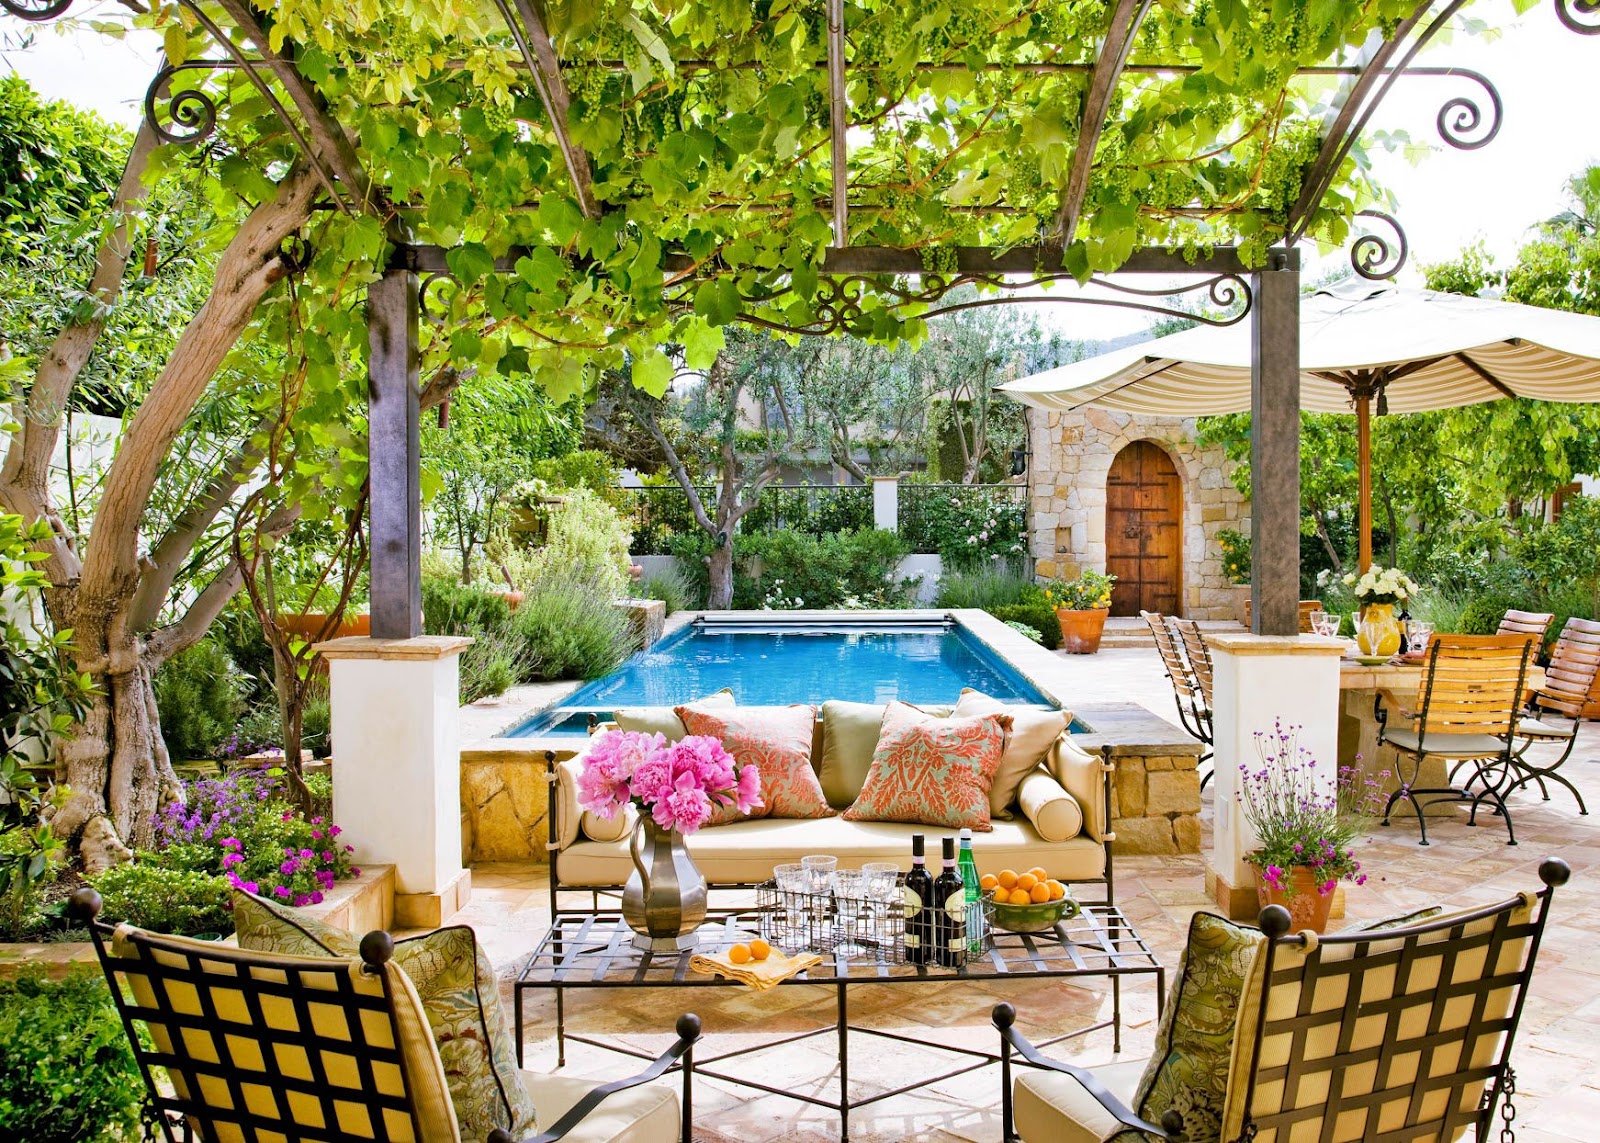 Elegant Living Home Garden Inspiration